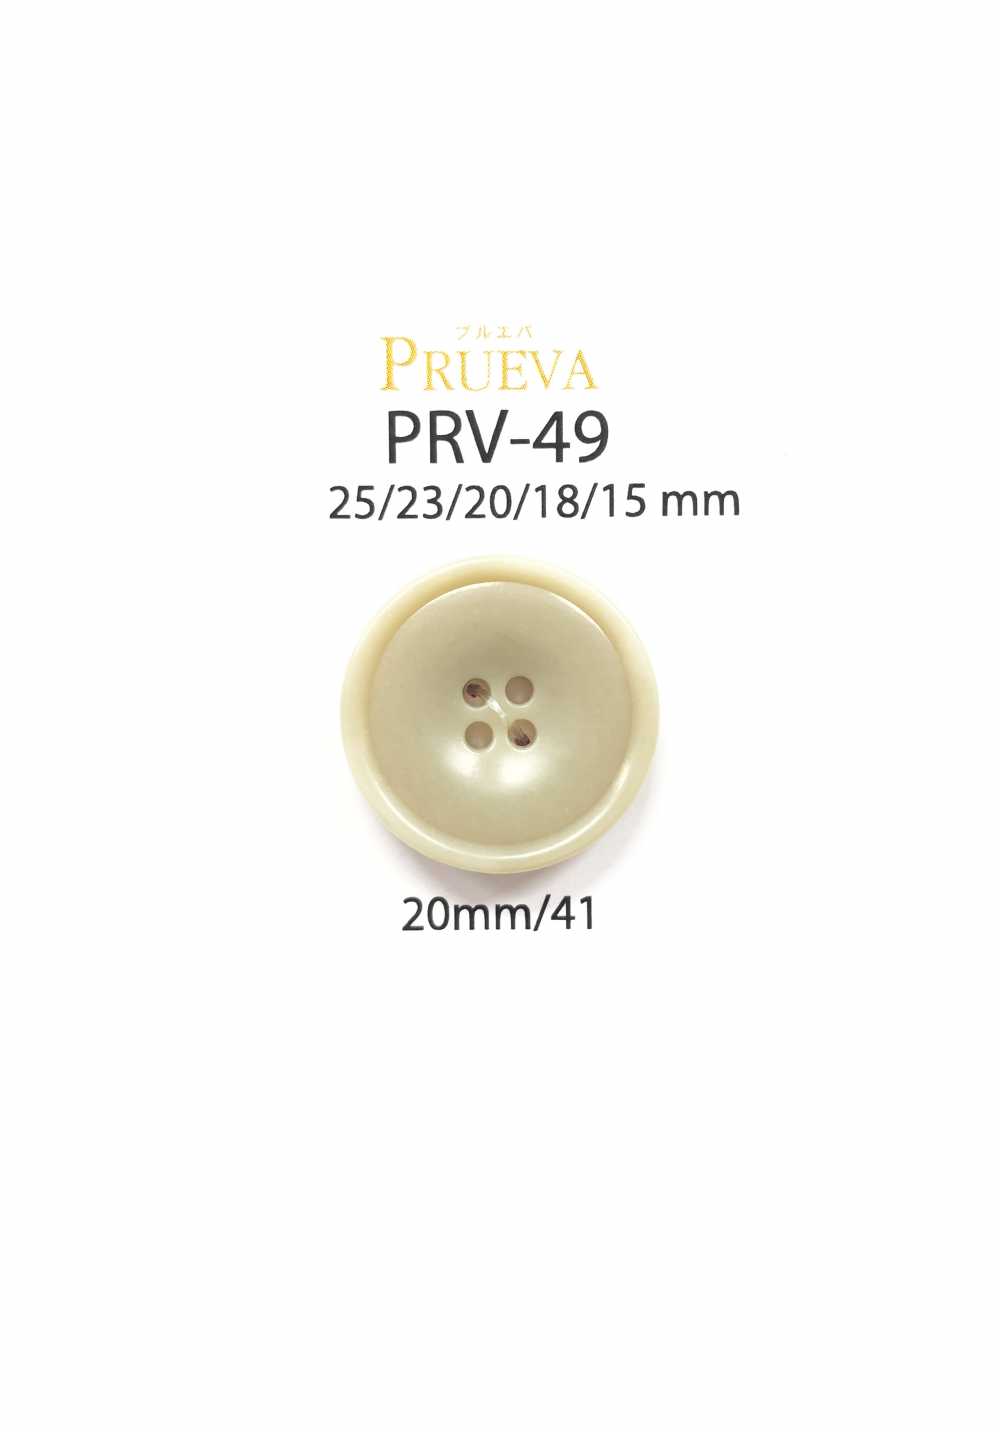 PRV-49 Cúc 4 Lỗ Bio Yulia IRIS